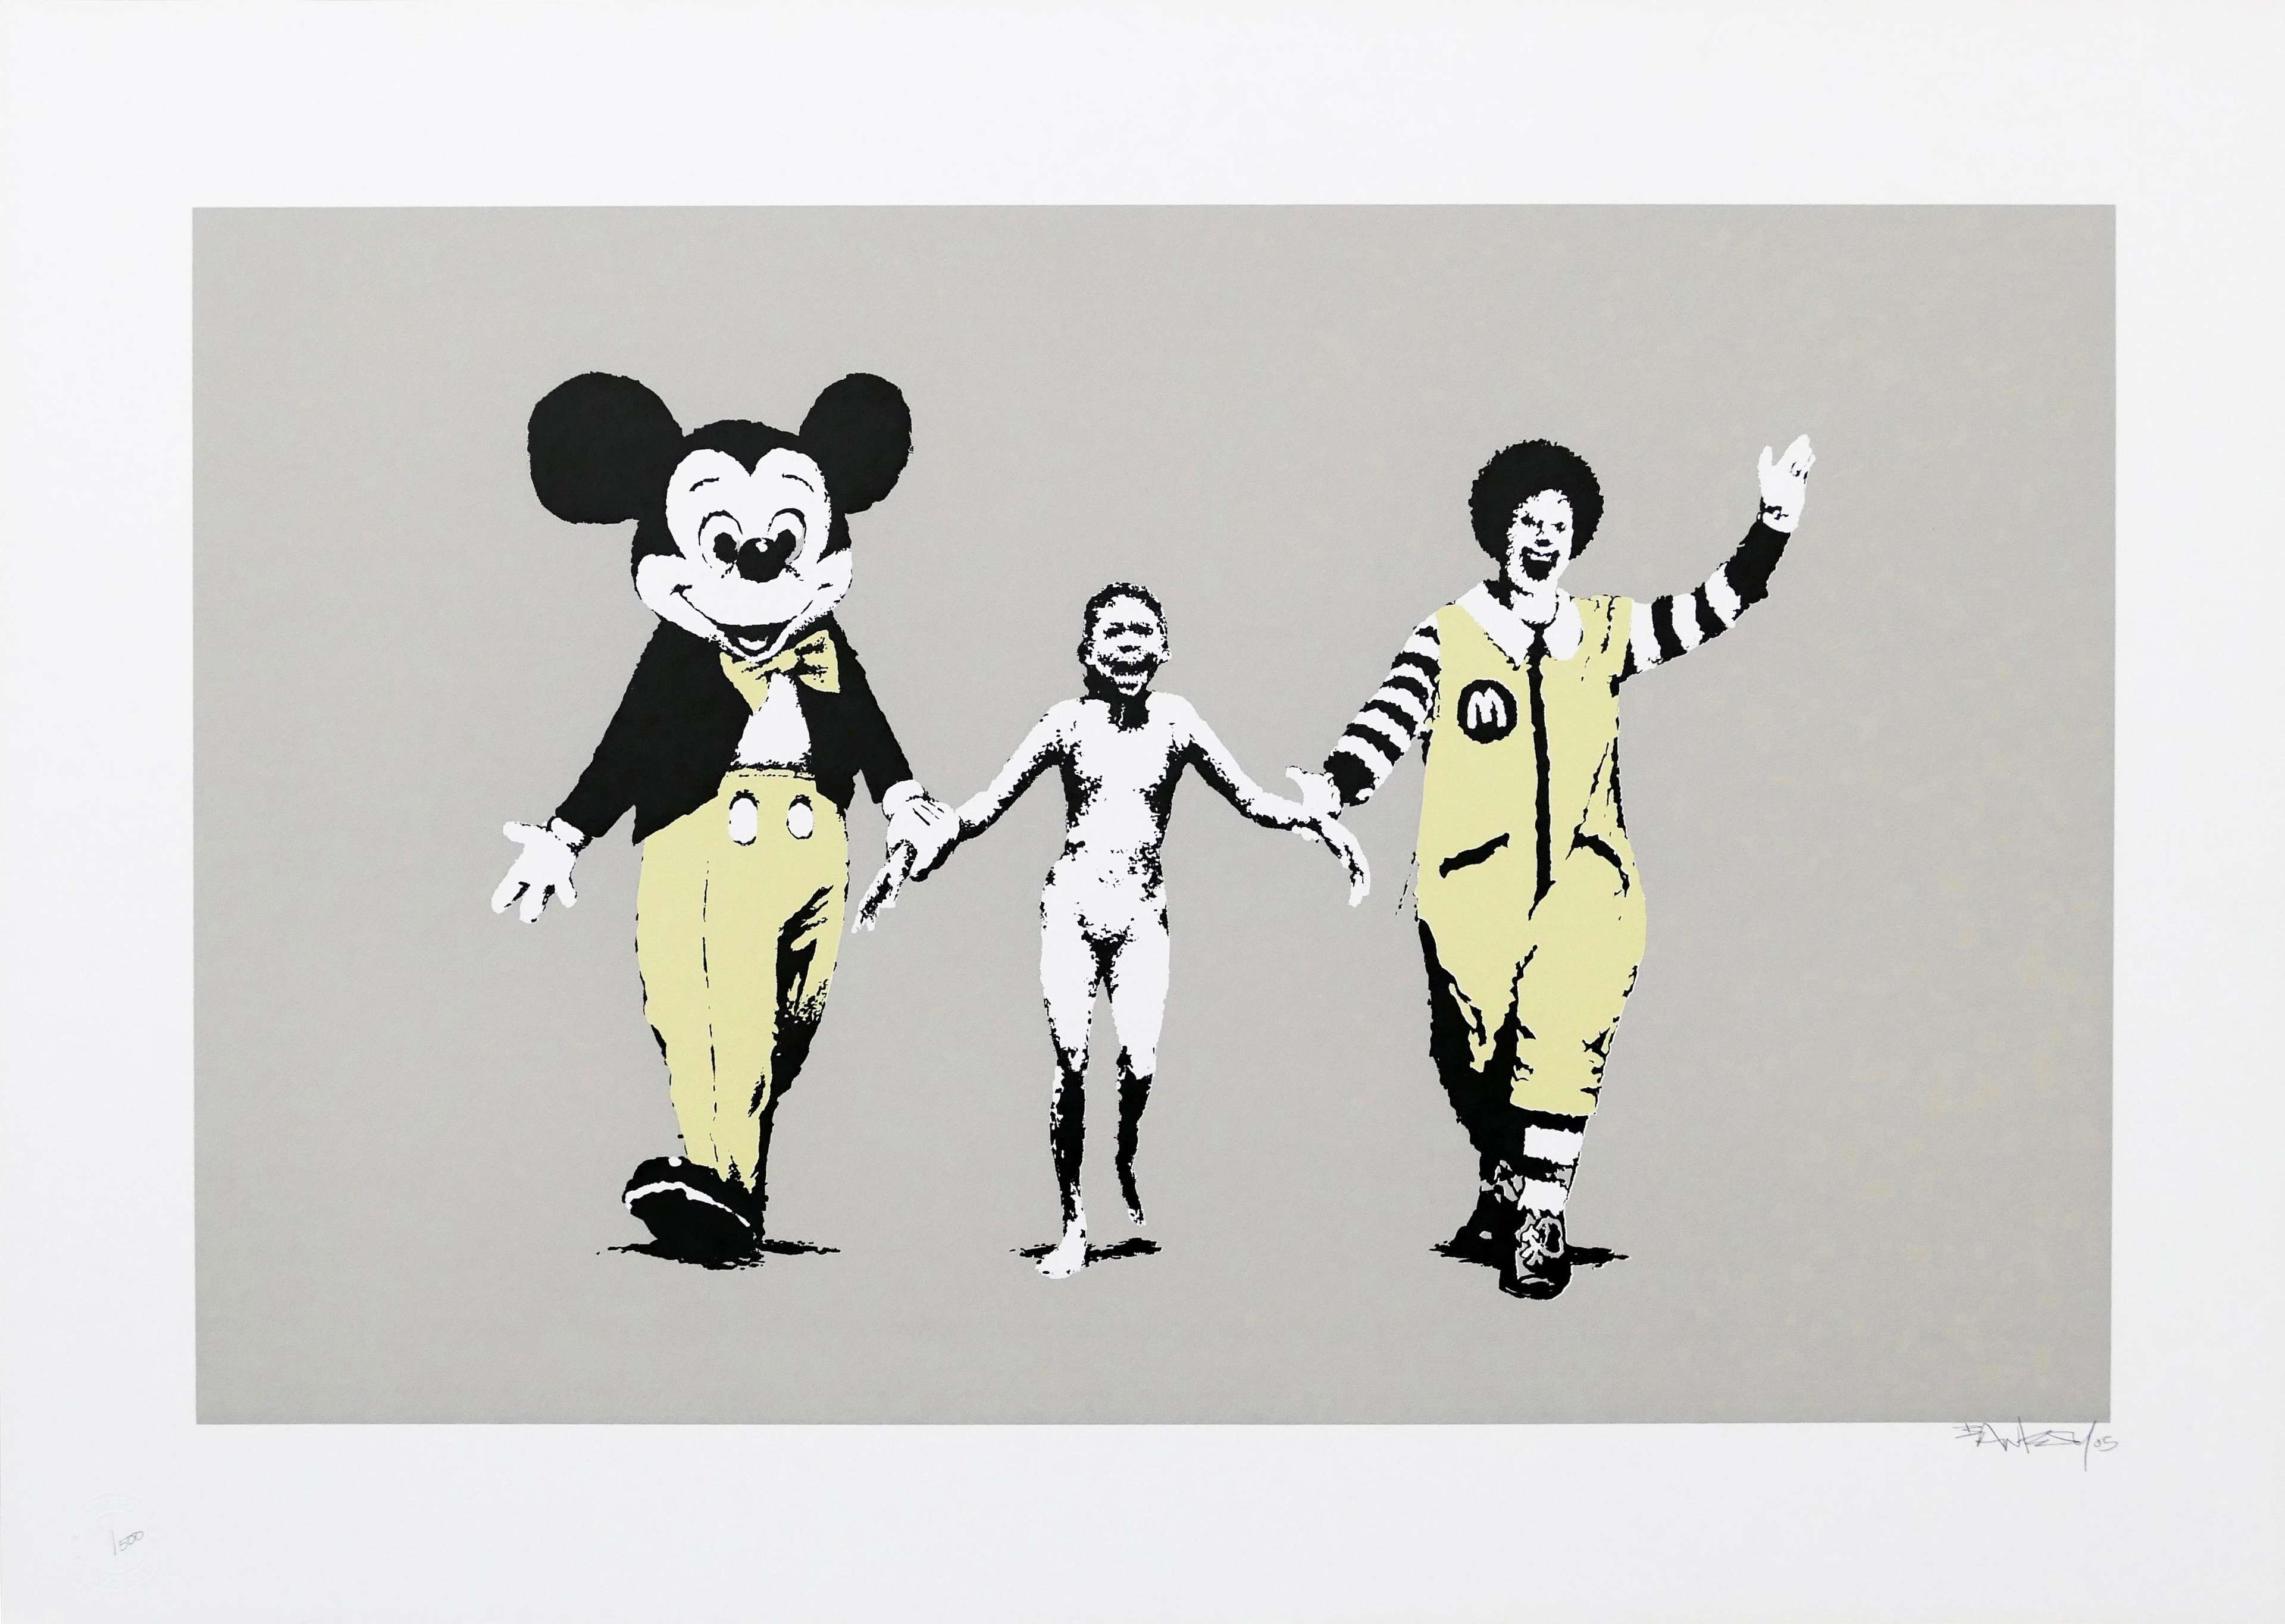 Napalm - Signed Print by Banksy 2004 - MyArtBroker